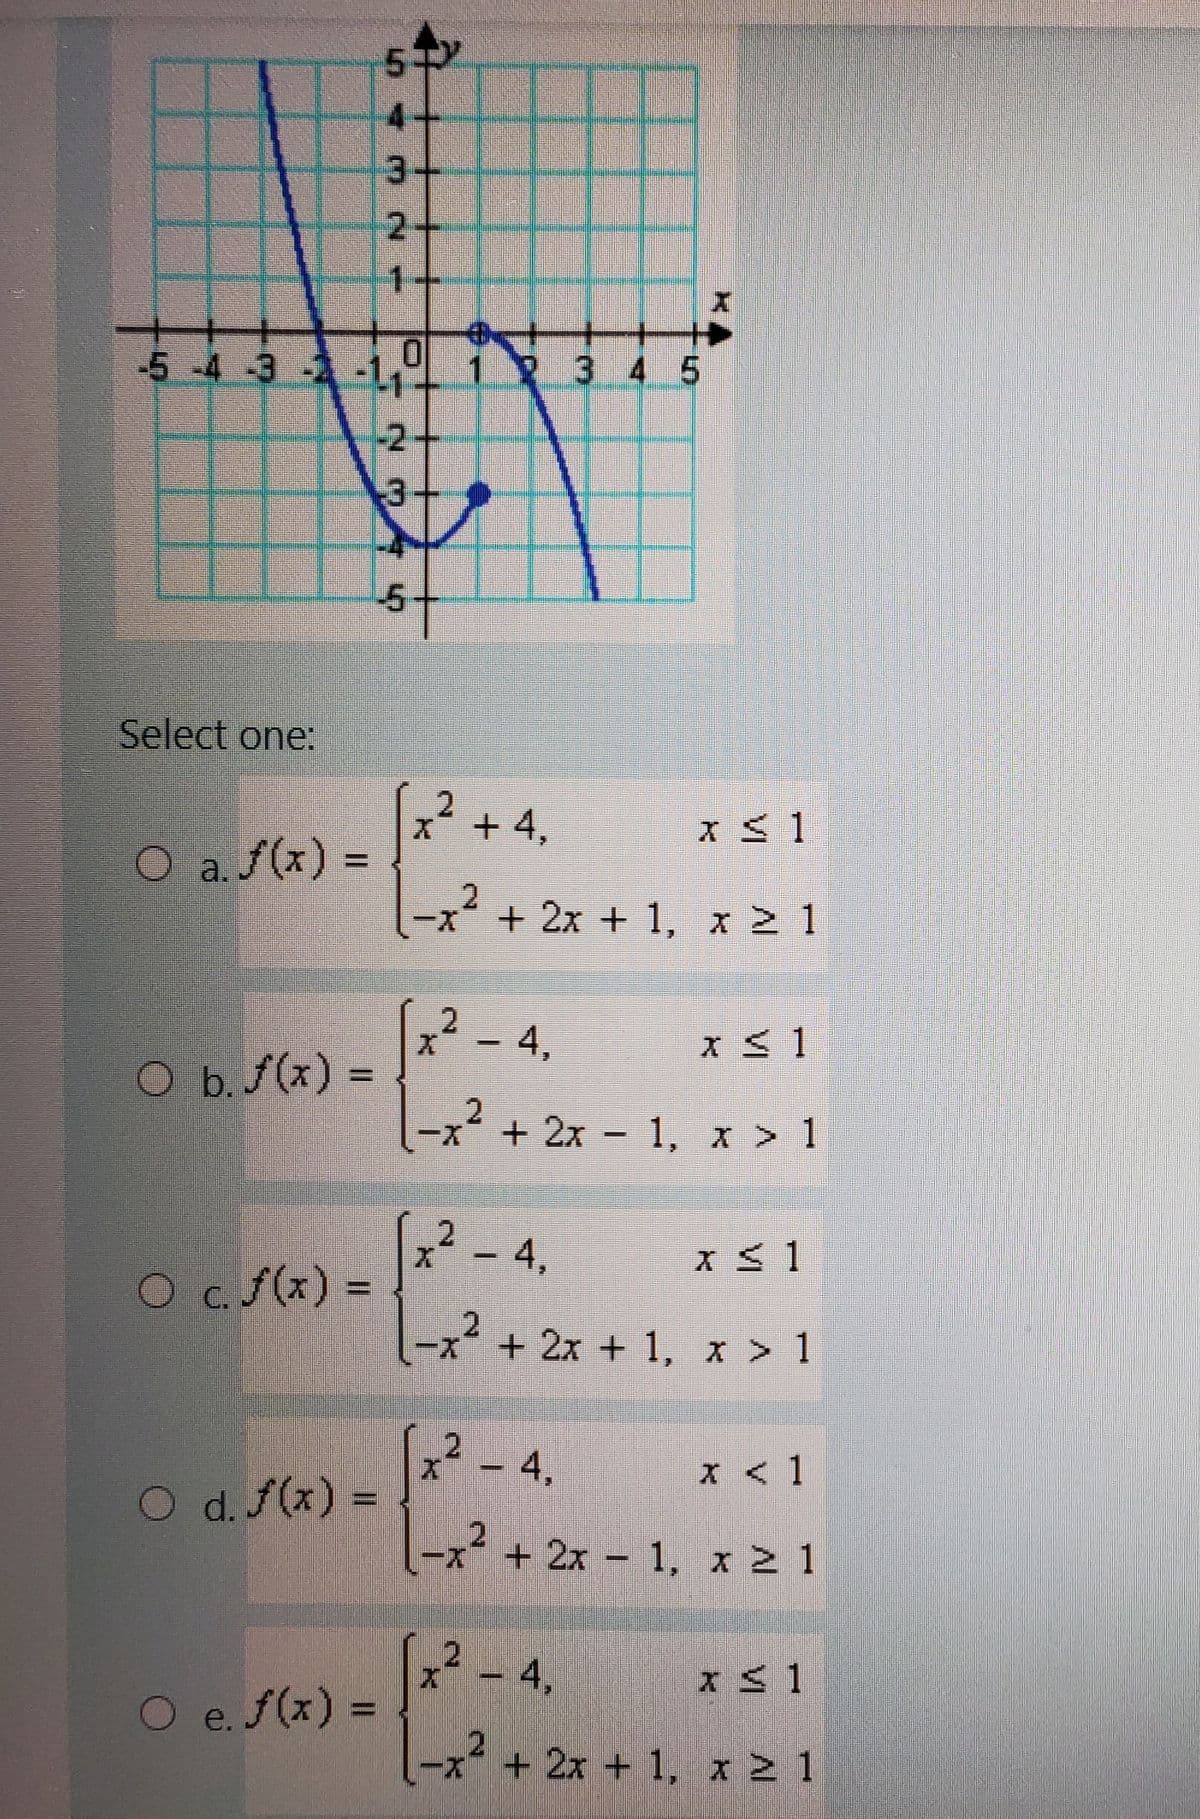 3+
2+
1+
-5 -4 -3 -1, i
3 4 5
-2+
3+
5-
Select one:
2.
x* + 4,
O a.f(x) =
-x+2x + 1, x 2 1
x - 4,
O b./(x)% =
|-x² + 2x - 1, x > 1
x2 -4,
%3D
Ocf(x) =
C.
-x² + 2x + 1, x > 1
x - 4,
2.
x < 1
O d.f(x) =
l-x² +
+ 2x 1, x 2 1
-4,
x < 1
O e.f(x) =
-x*+2x + 1, x 2 1
543 N-
